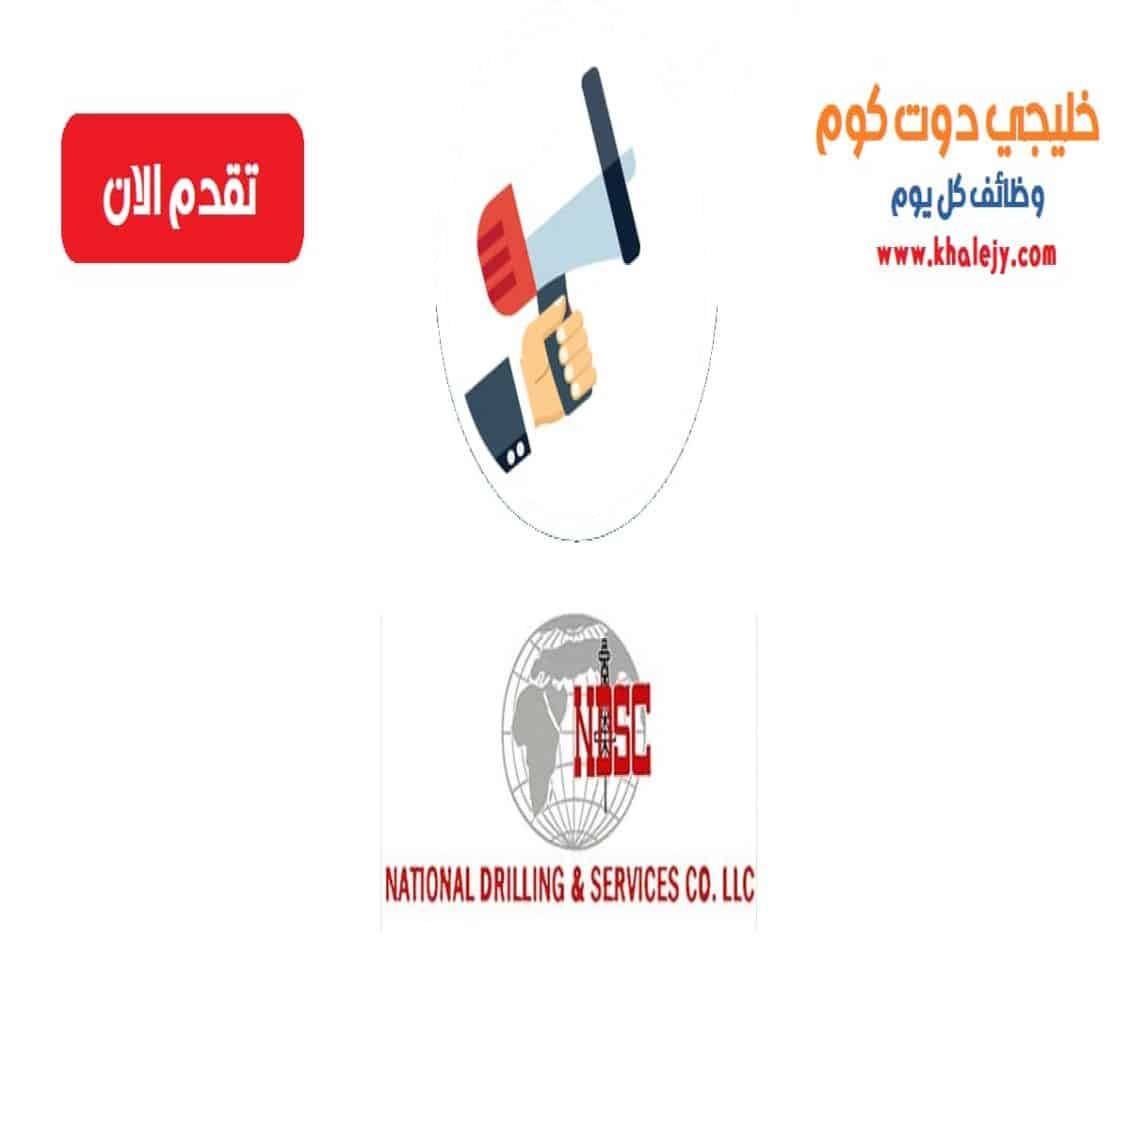 وظائف الشركة الوطنية للحفر والخدمات في سلطنة عمان